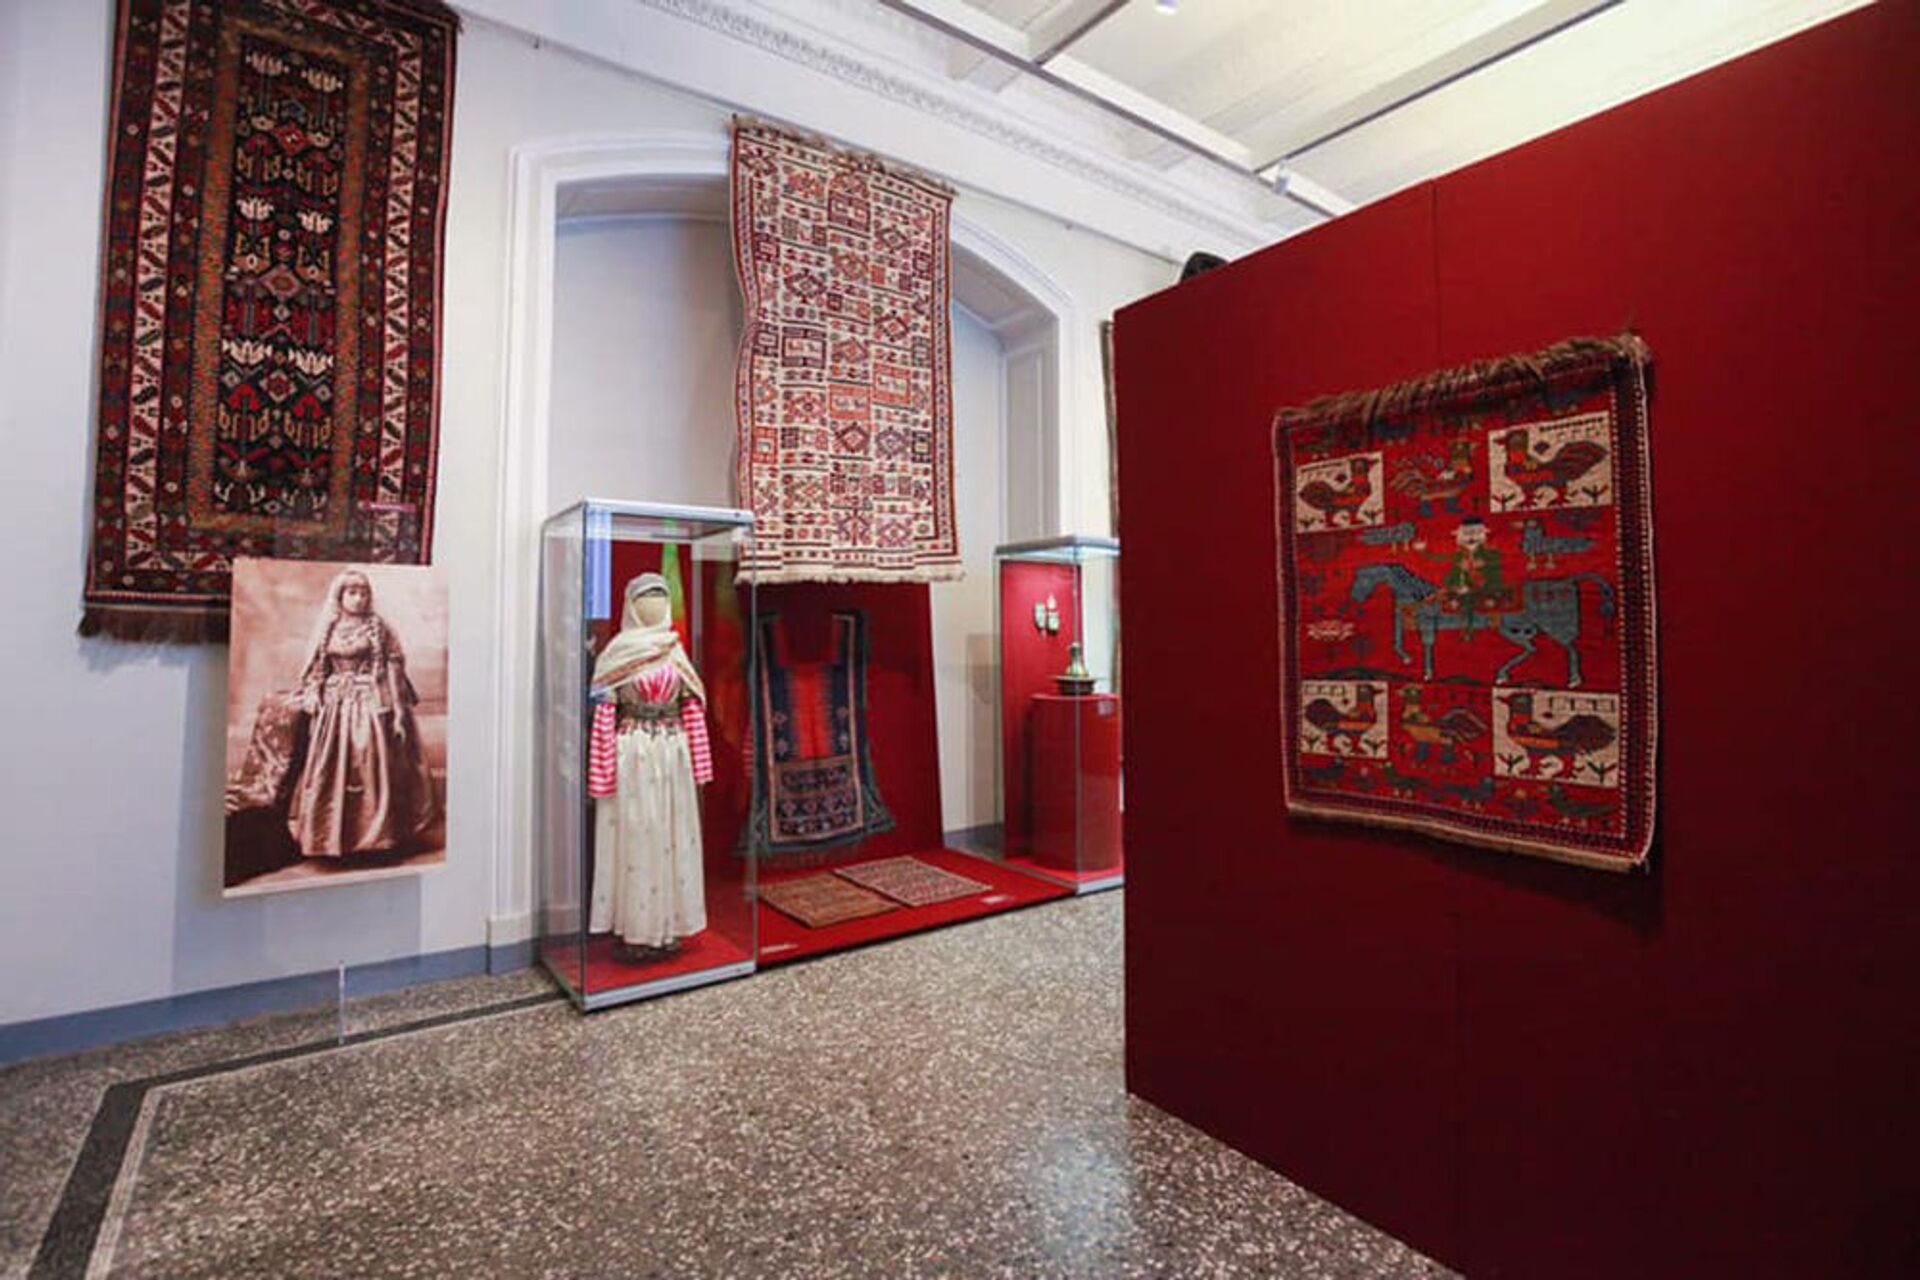 Уникальные азербайджанские экспонаты выставляются в российском музее - фото - Sputnik Азербайджан, 1920, 19.02.2021